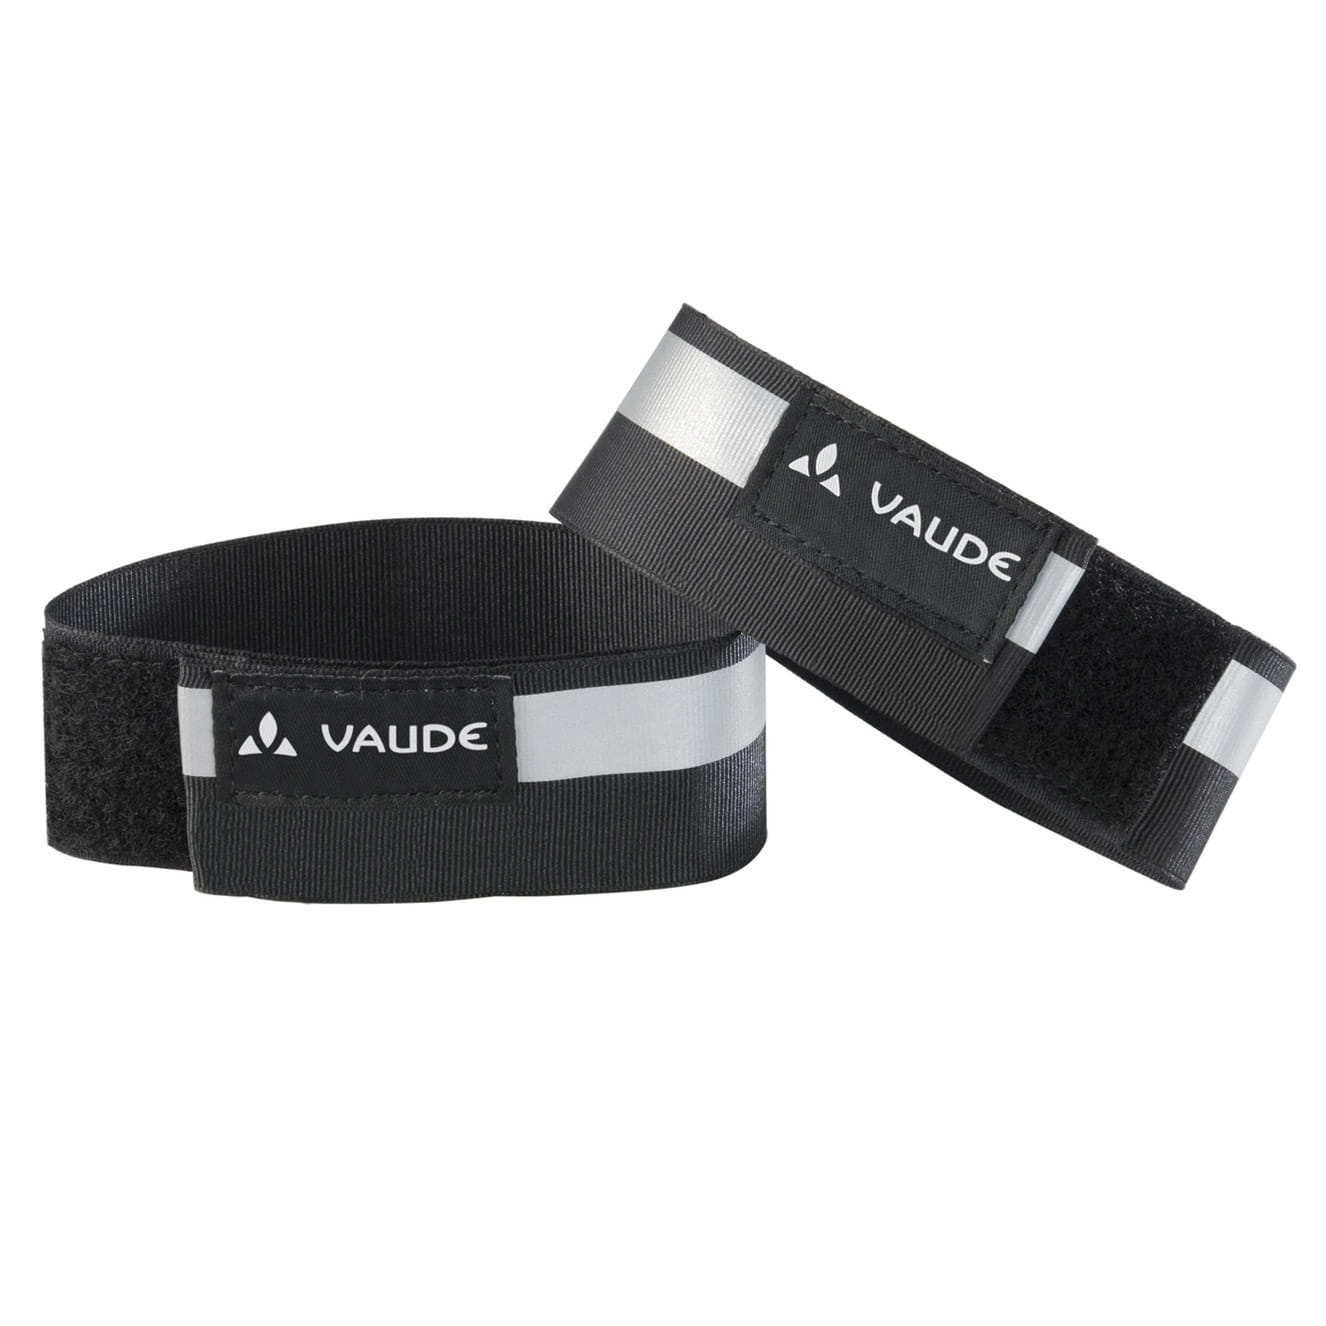 VAUDE Reflective cuffs Klett-Reflexband Hosenband Black (Pair)